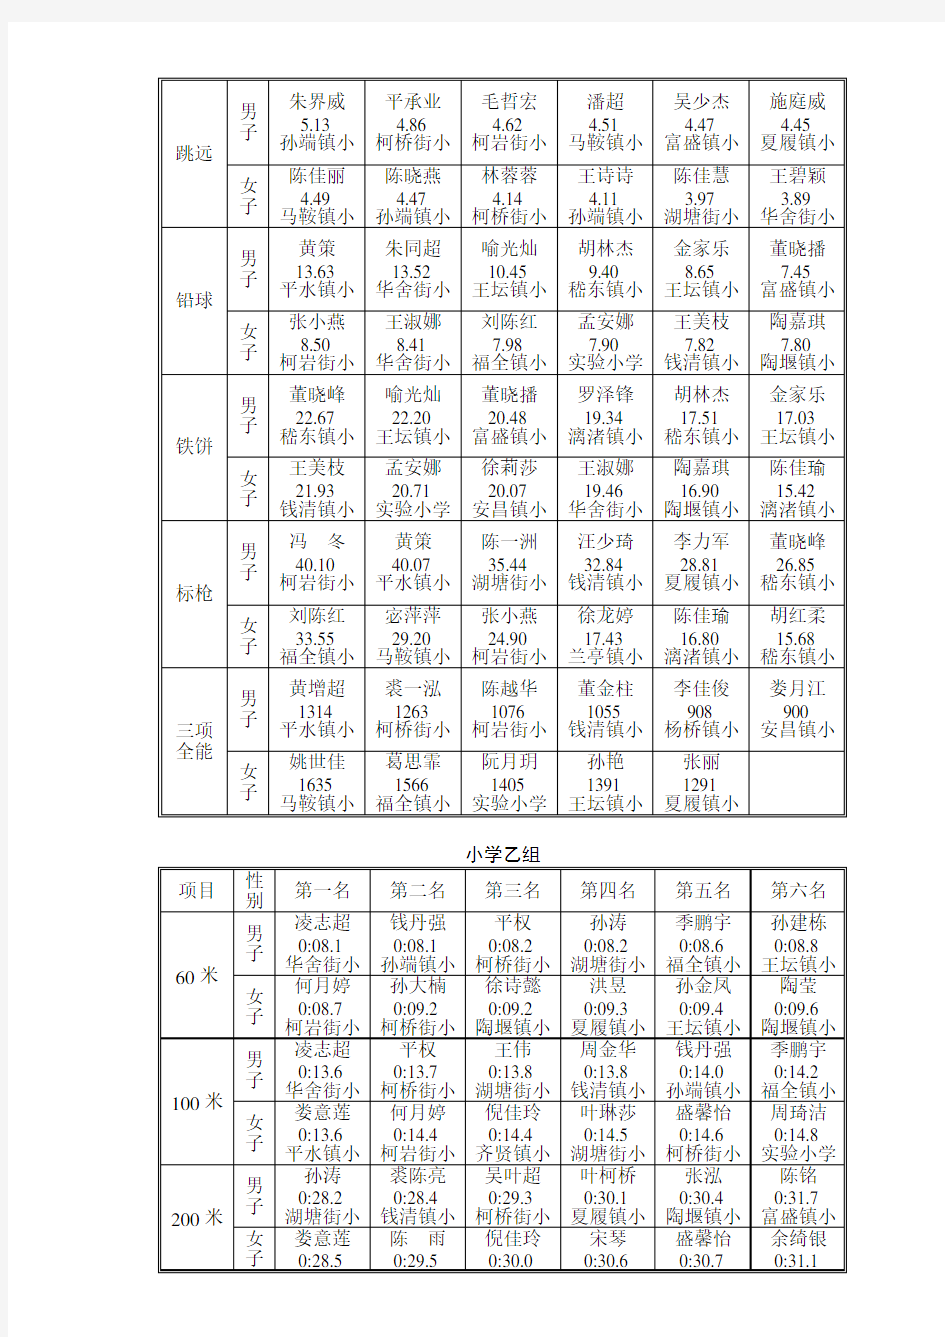 2009年绍兴县中小学生田径运动会单项名次成绩表